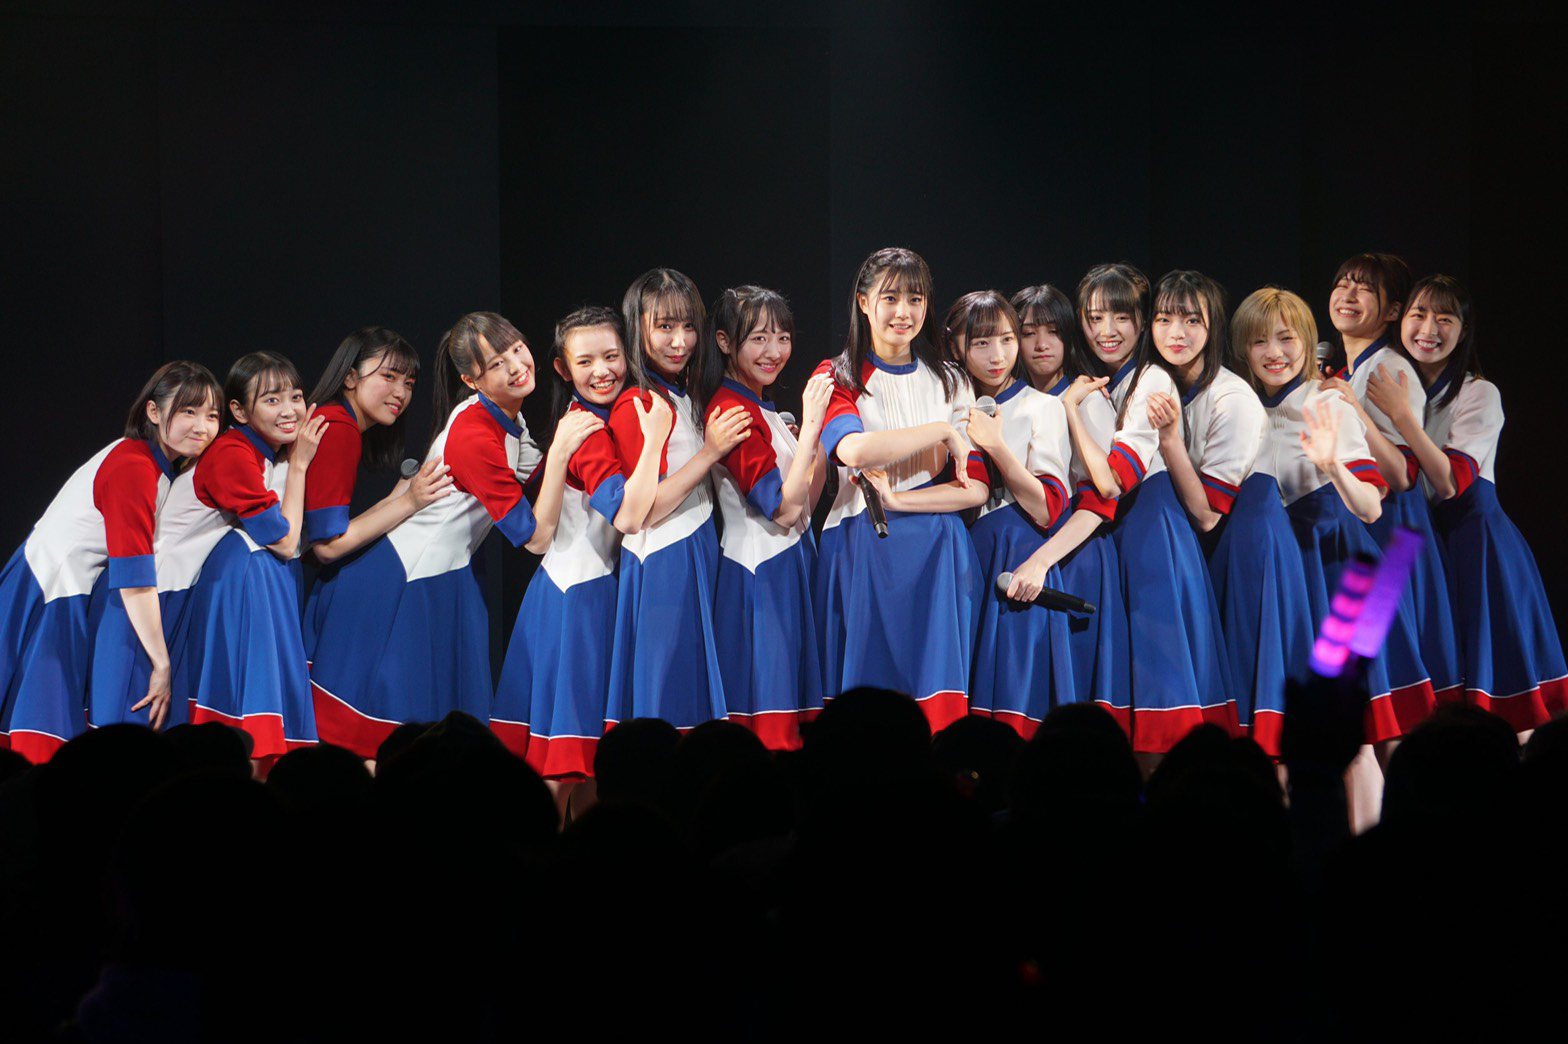 STU48瀧野由美子「今までにないダンスに注目して」待望の4thシングルのメンバー決定